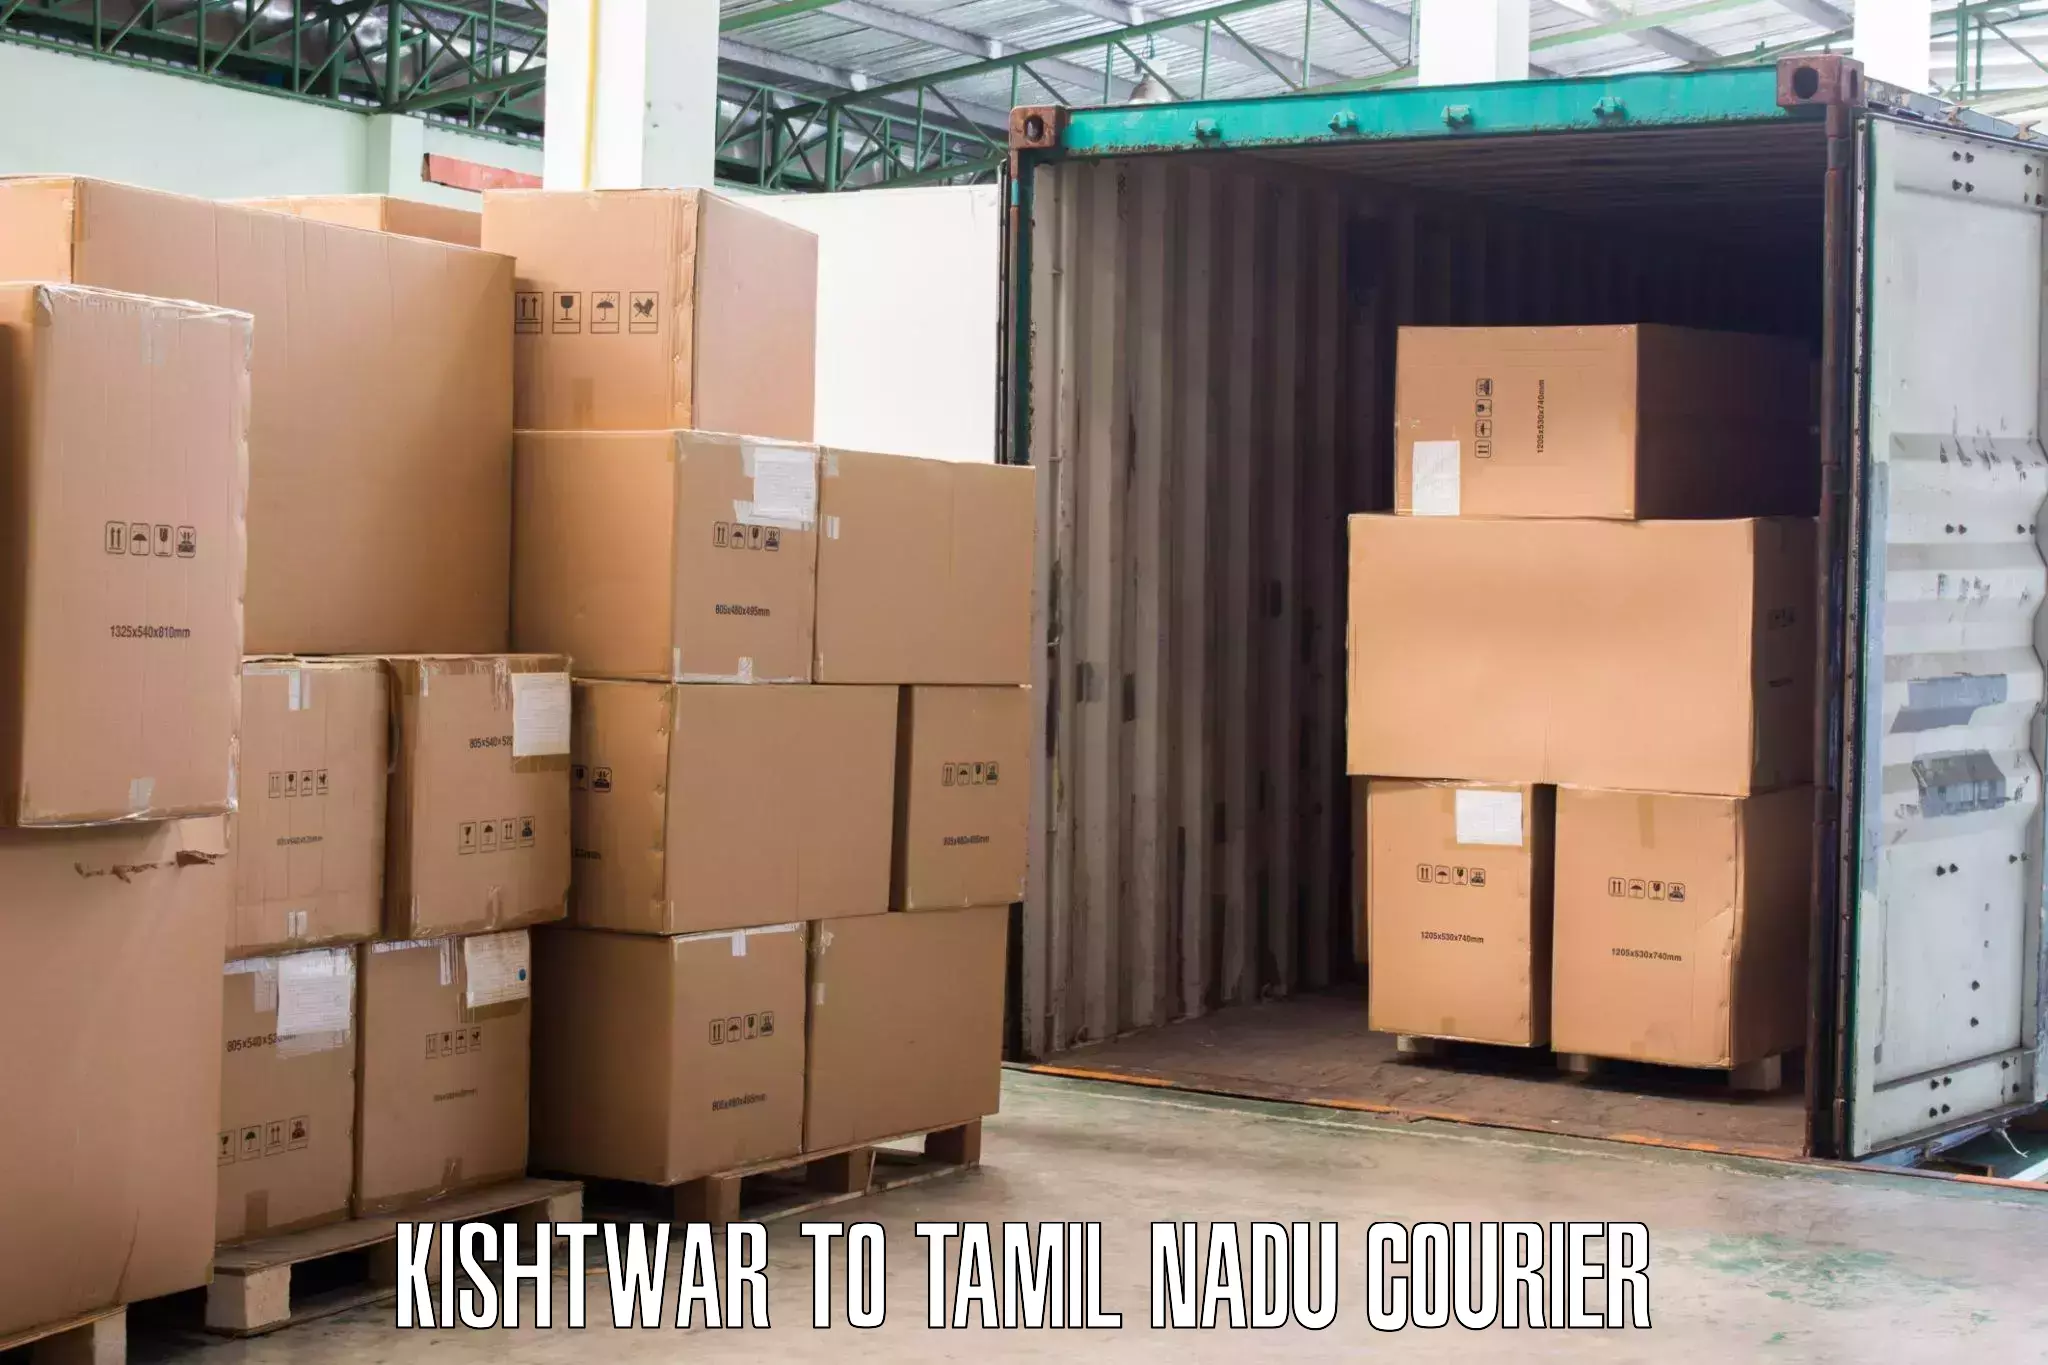 Furniture delivery service Kishtwar to Tamil Nadu